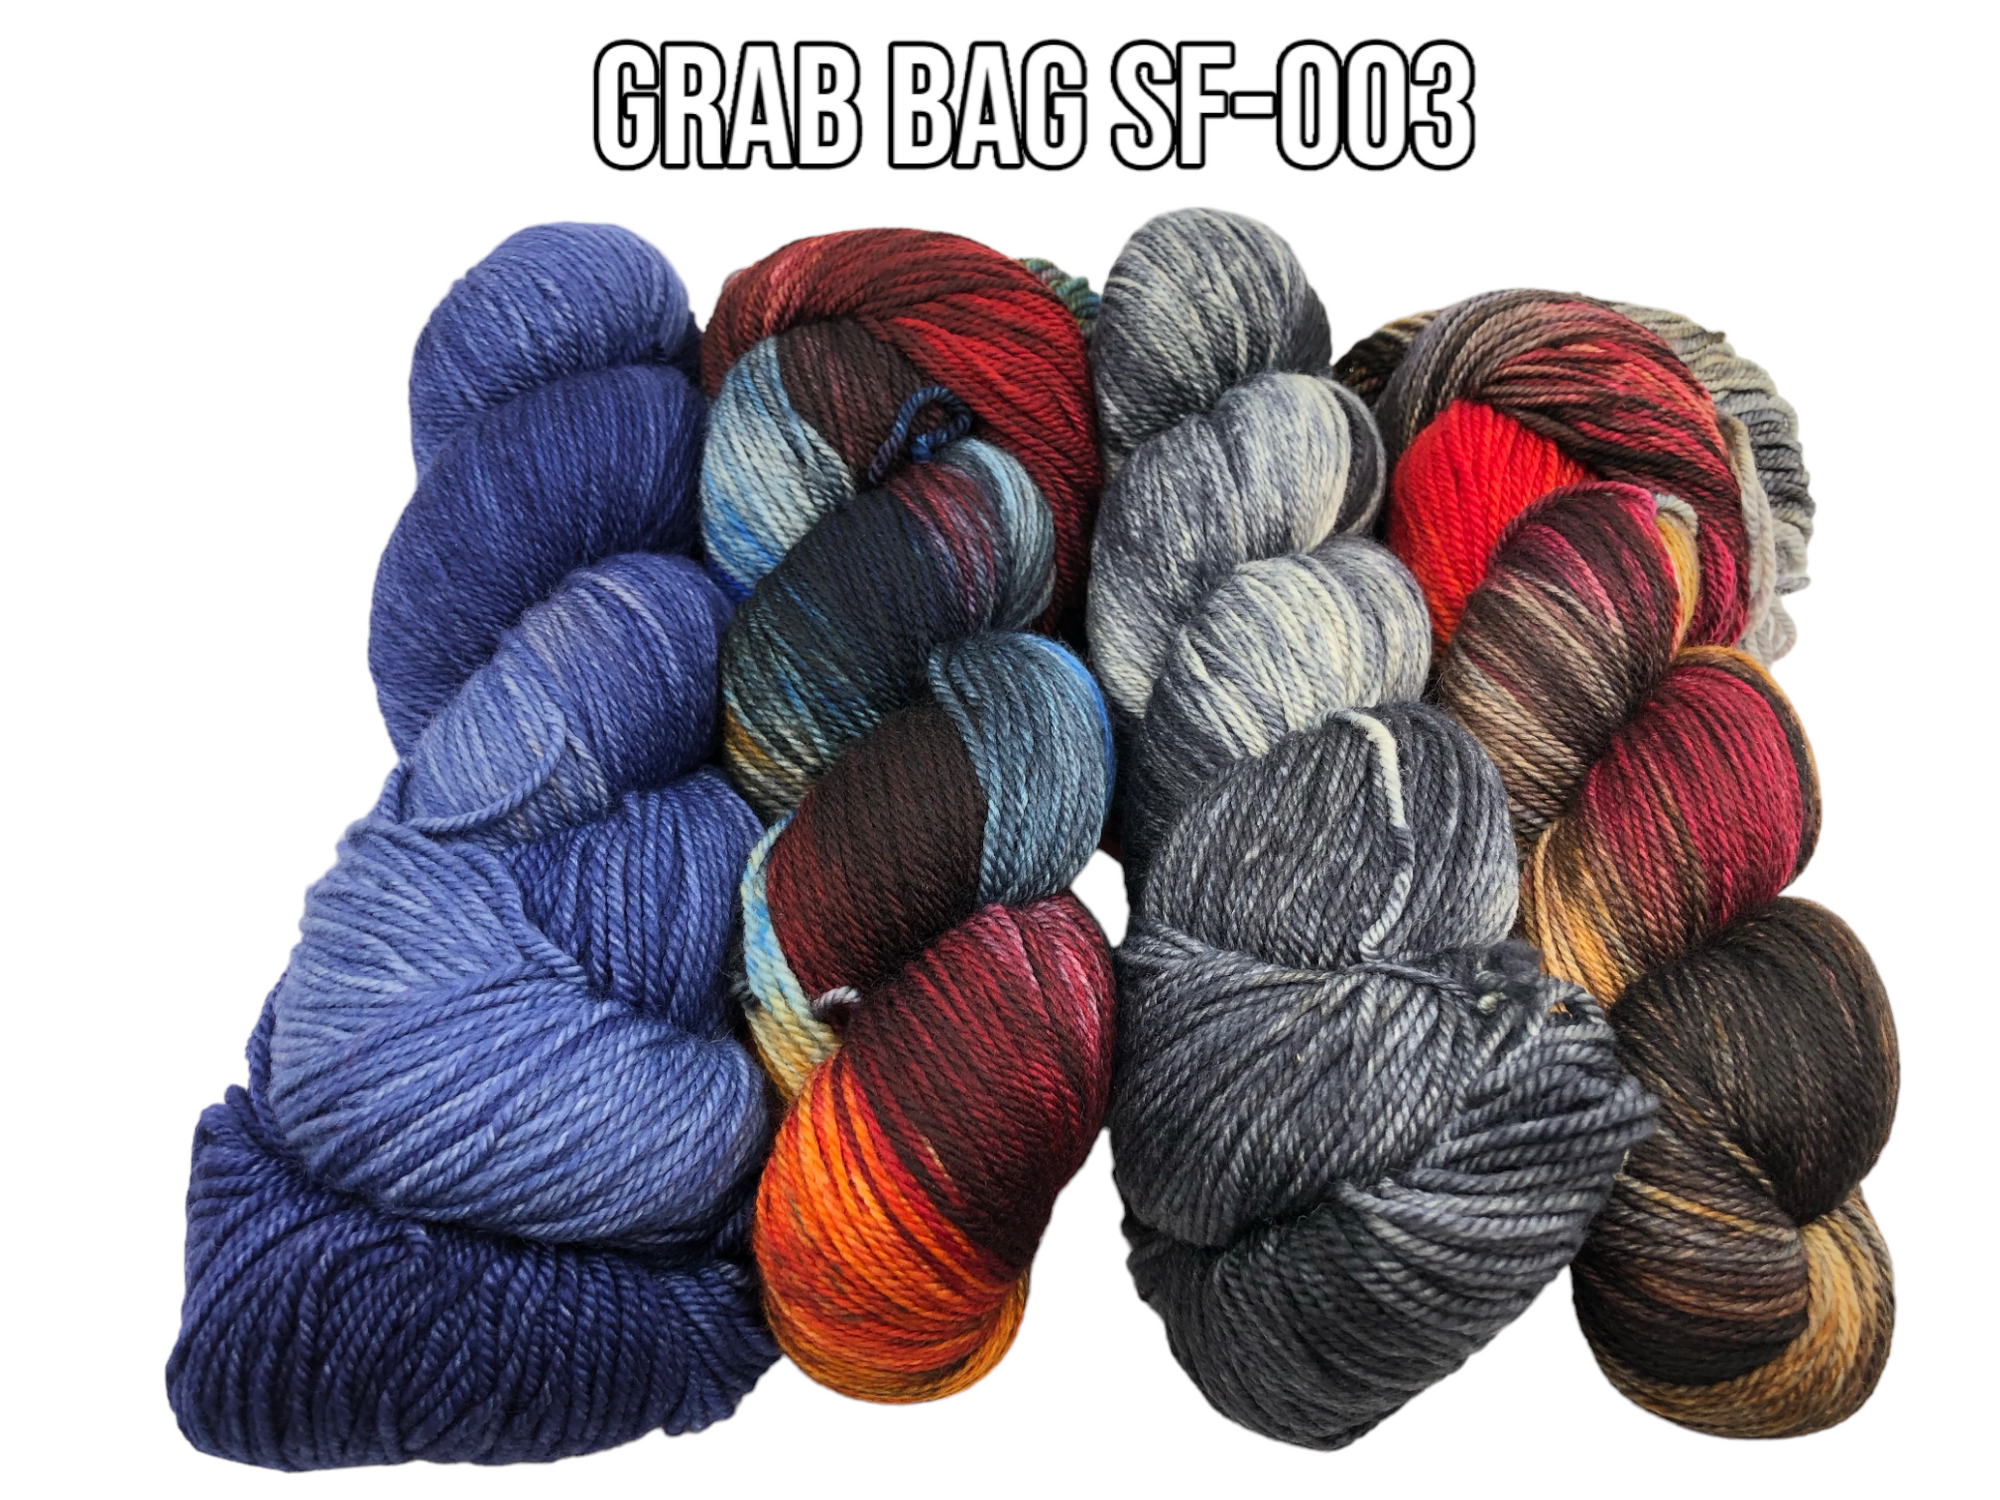 Grab Bag SF-003